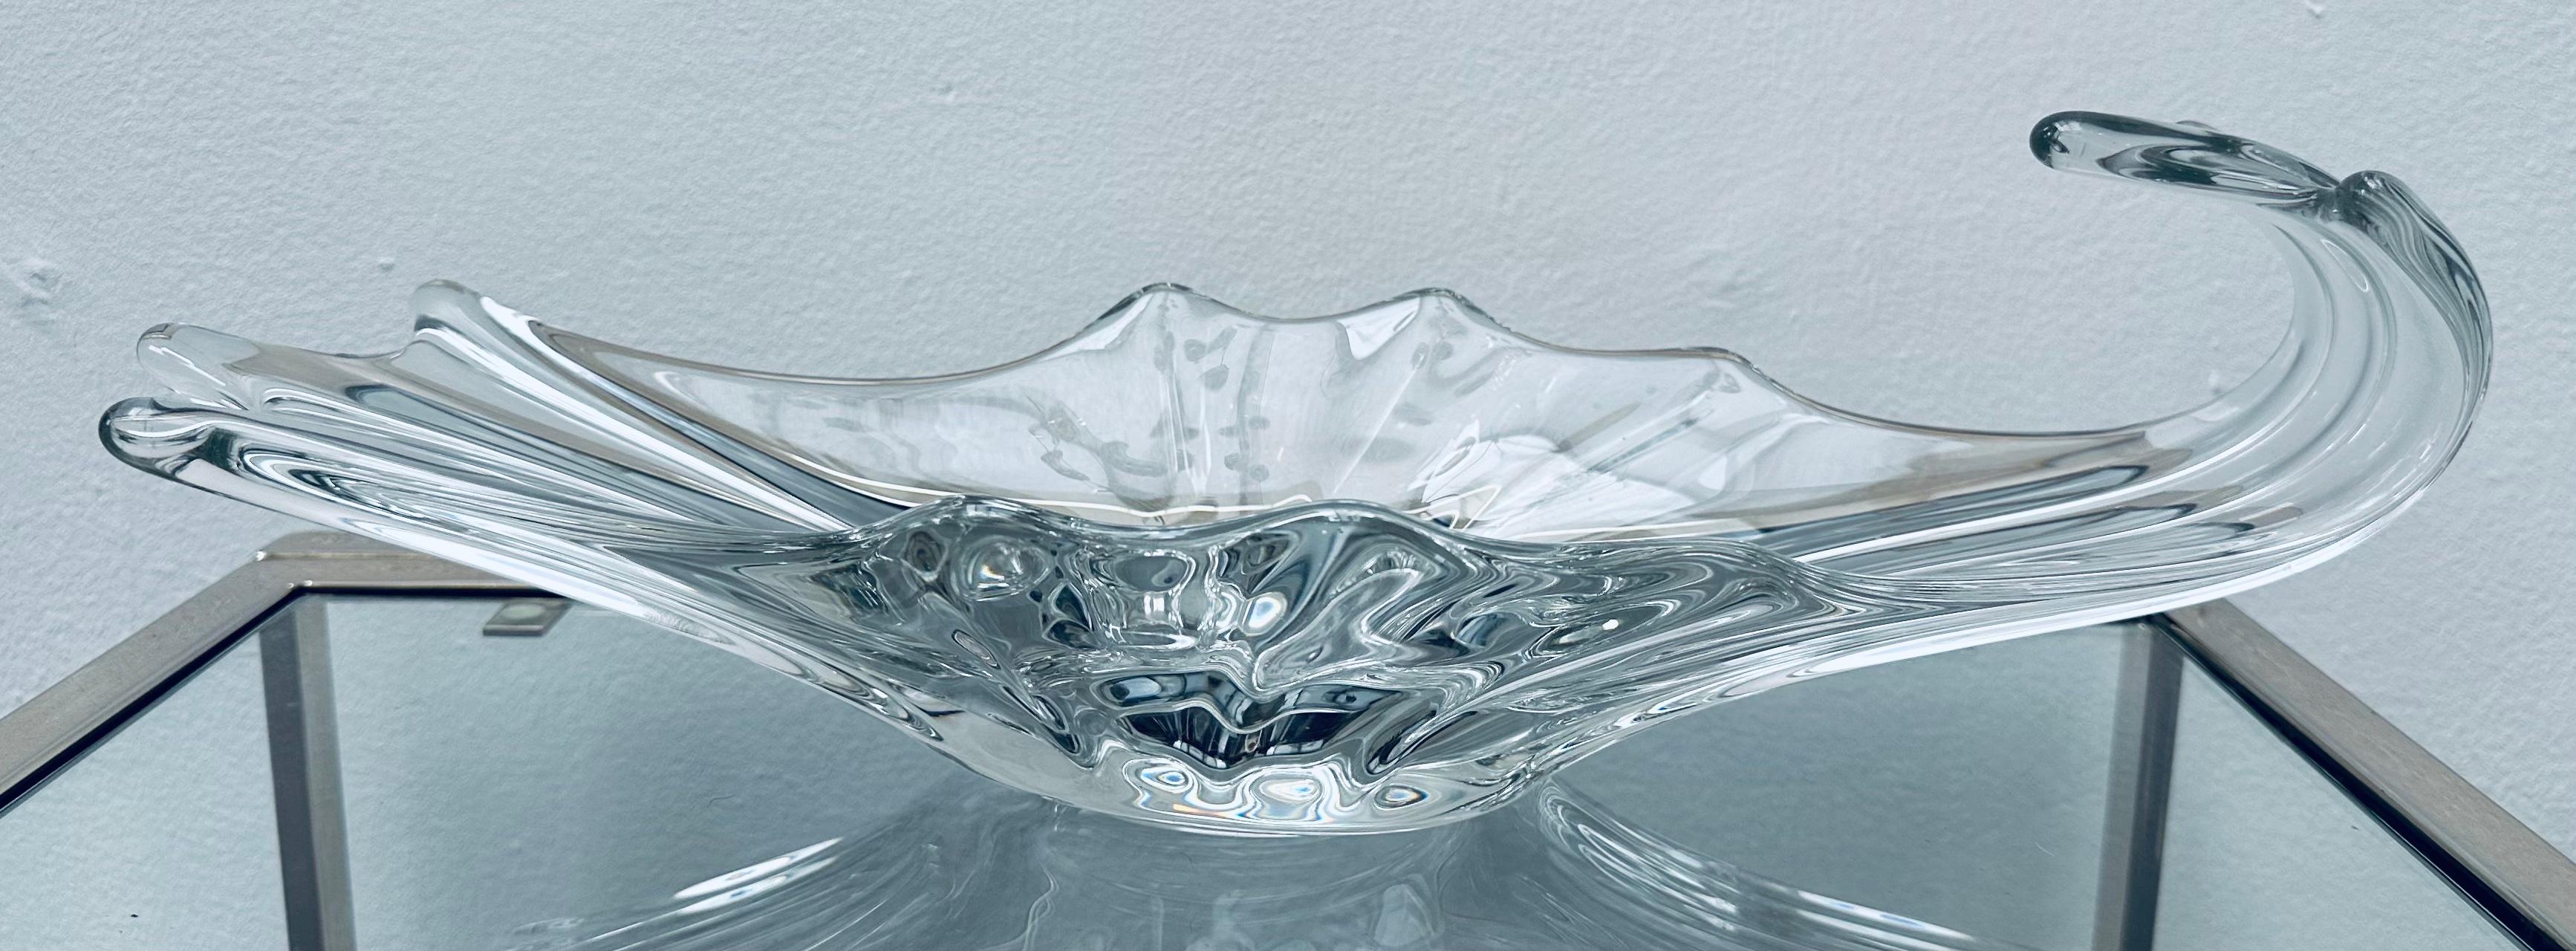 1950er French Art Glass Obstschale Tafelaufsatz Kristallglasschale.  Das asymmetrische, klare Kristallglas hat auf drei Seiten eine muschelförmige Form und auf der anderen Seite ein gewelltes Design, wodurch es leicht zu tragen ist.  Die sanften